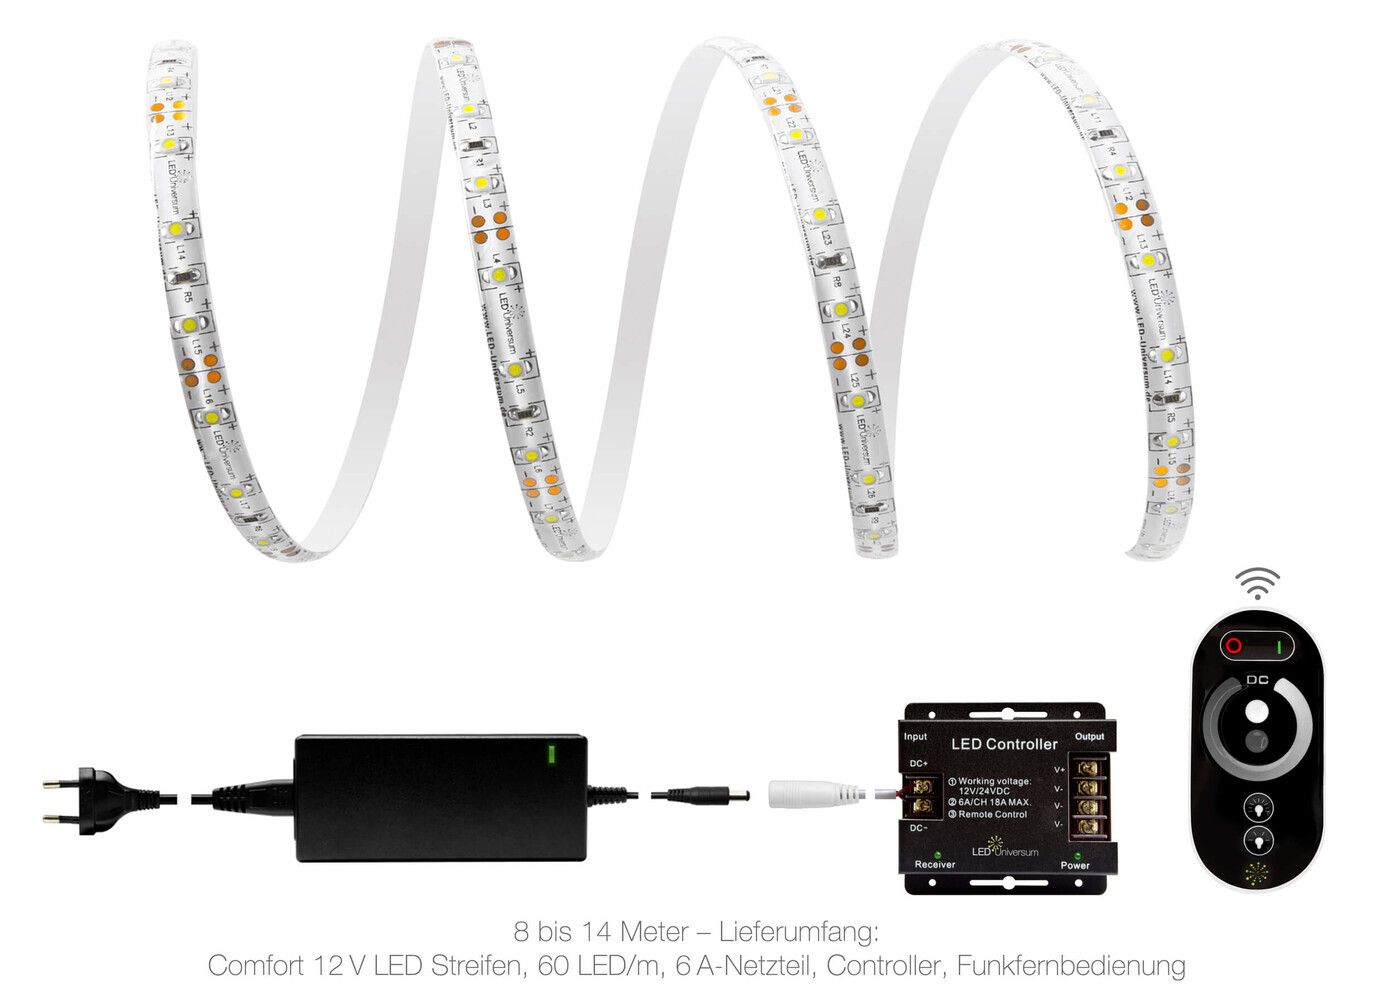 Hochwertiger, kaltweißer 12V Comfort LED Streifen von LED Universum mit 60 LEDs pro Meter und IP65 Schutz